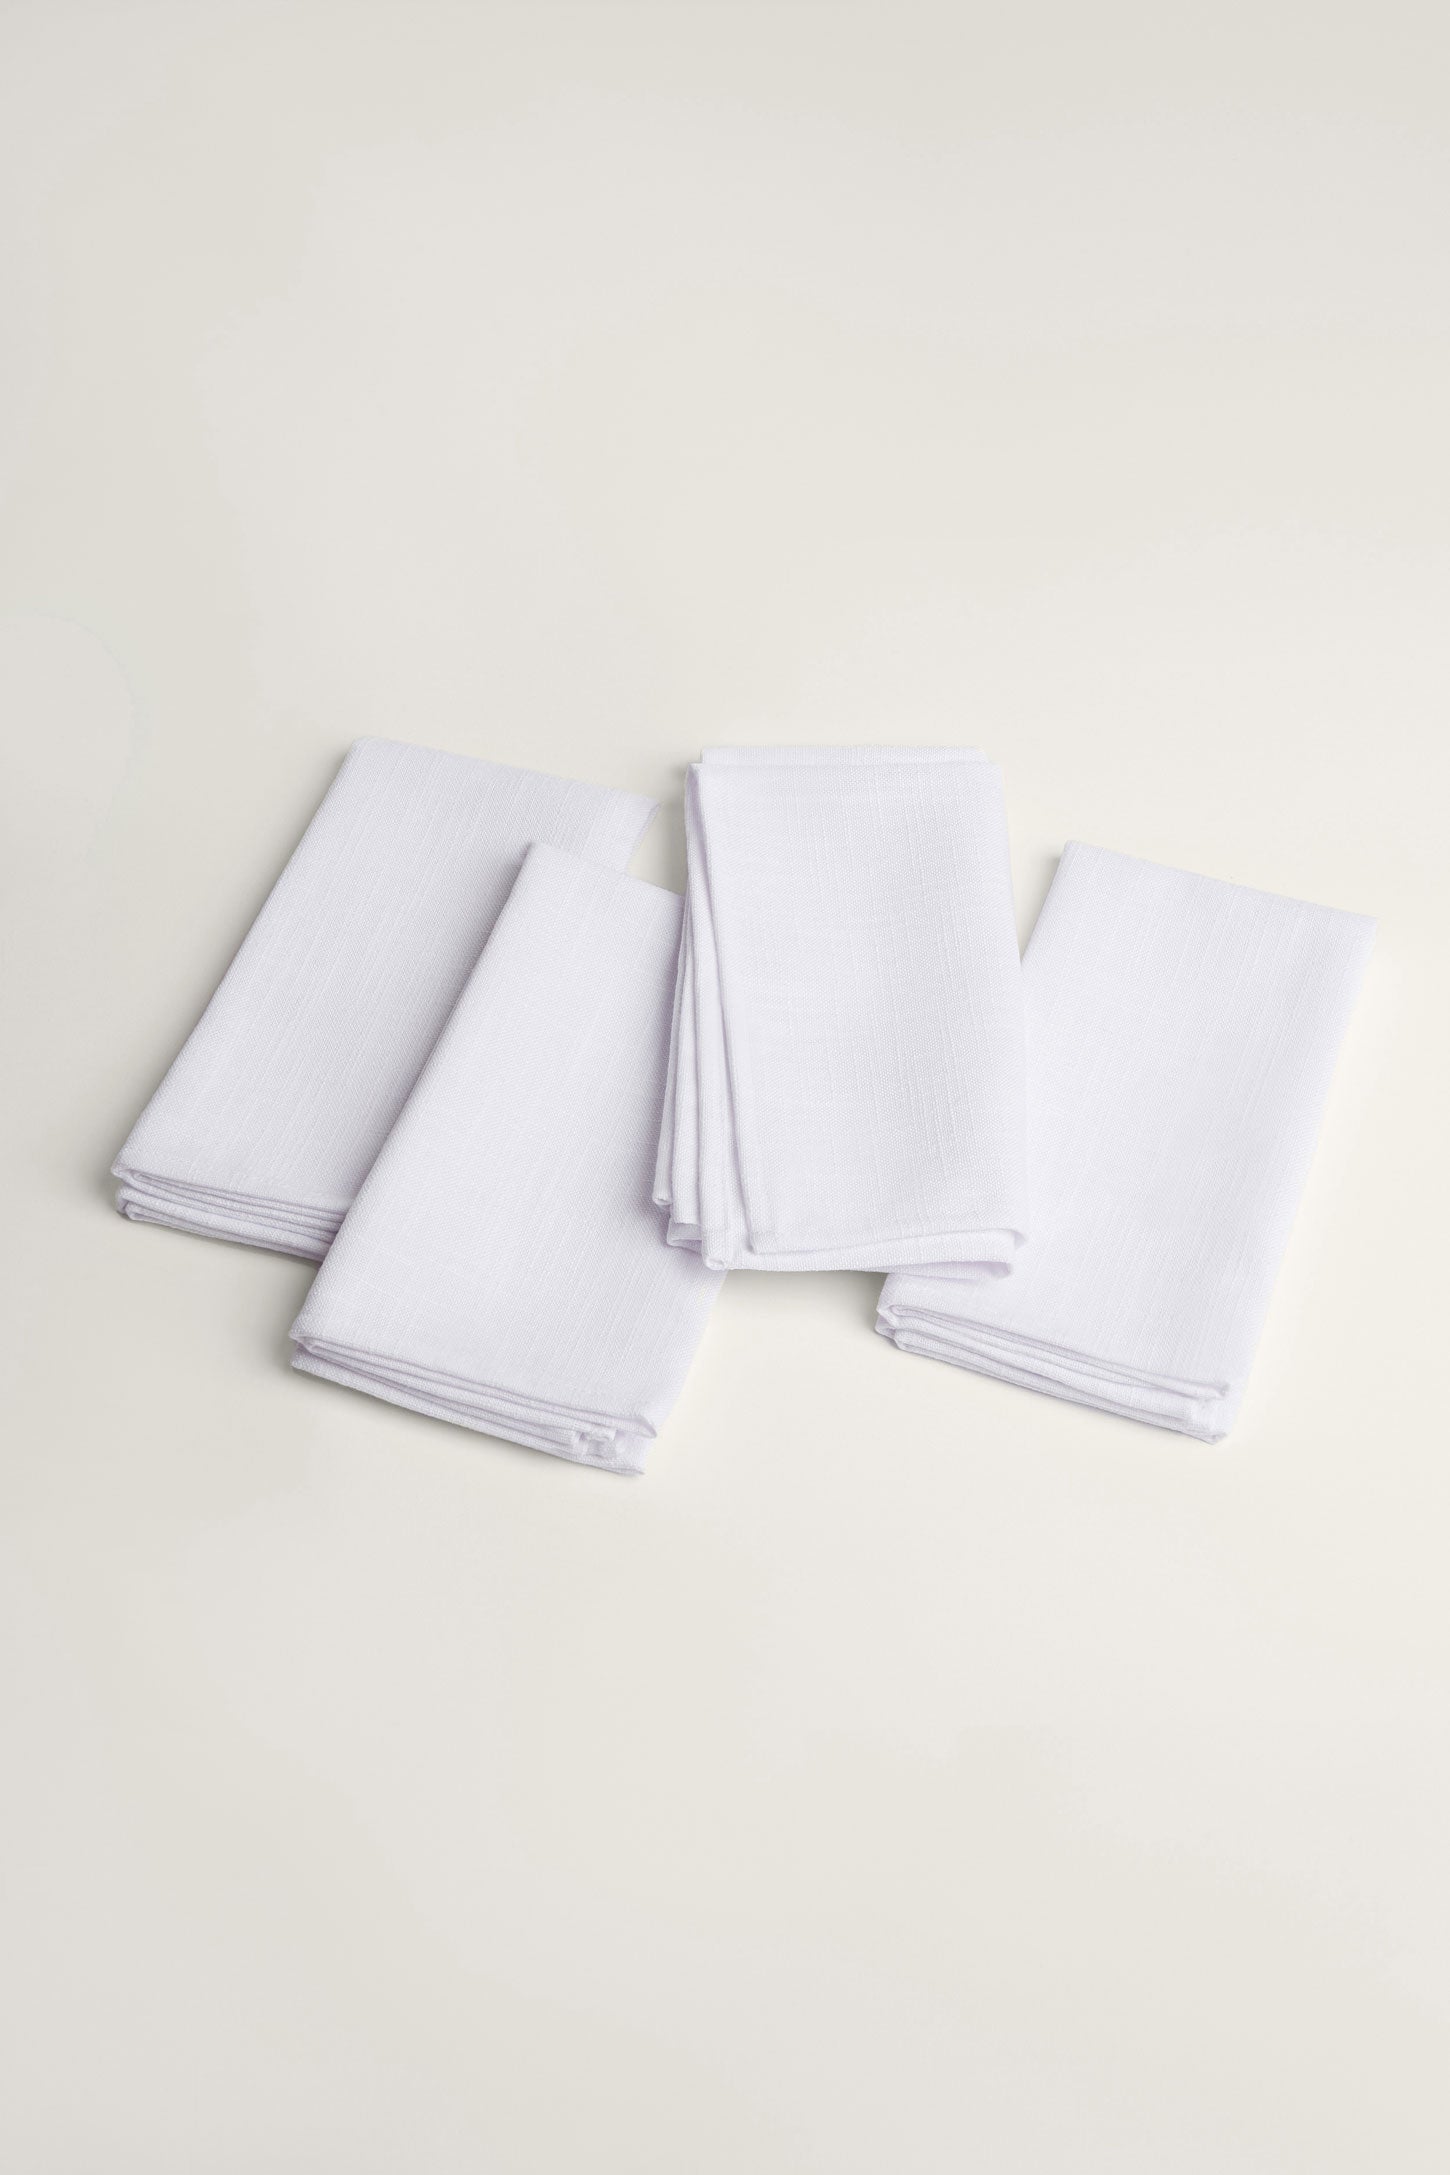 Paquet de 4 serviettes de table texture lin, 2/20$ - Maison && BLANC